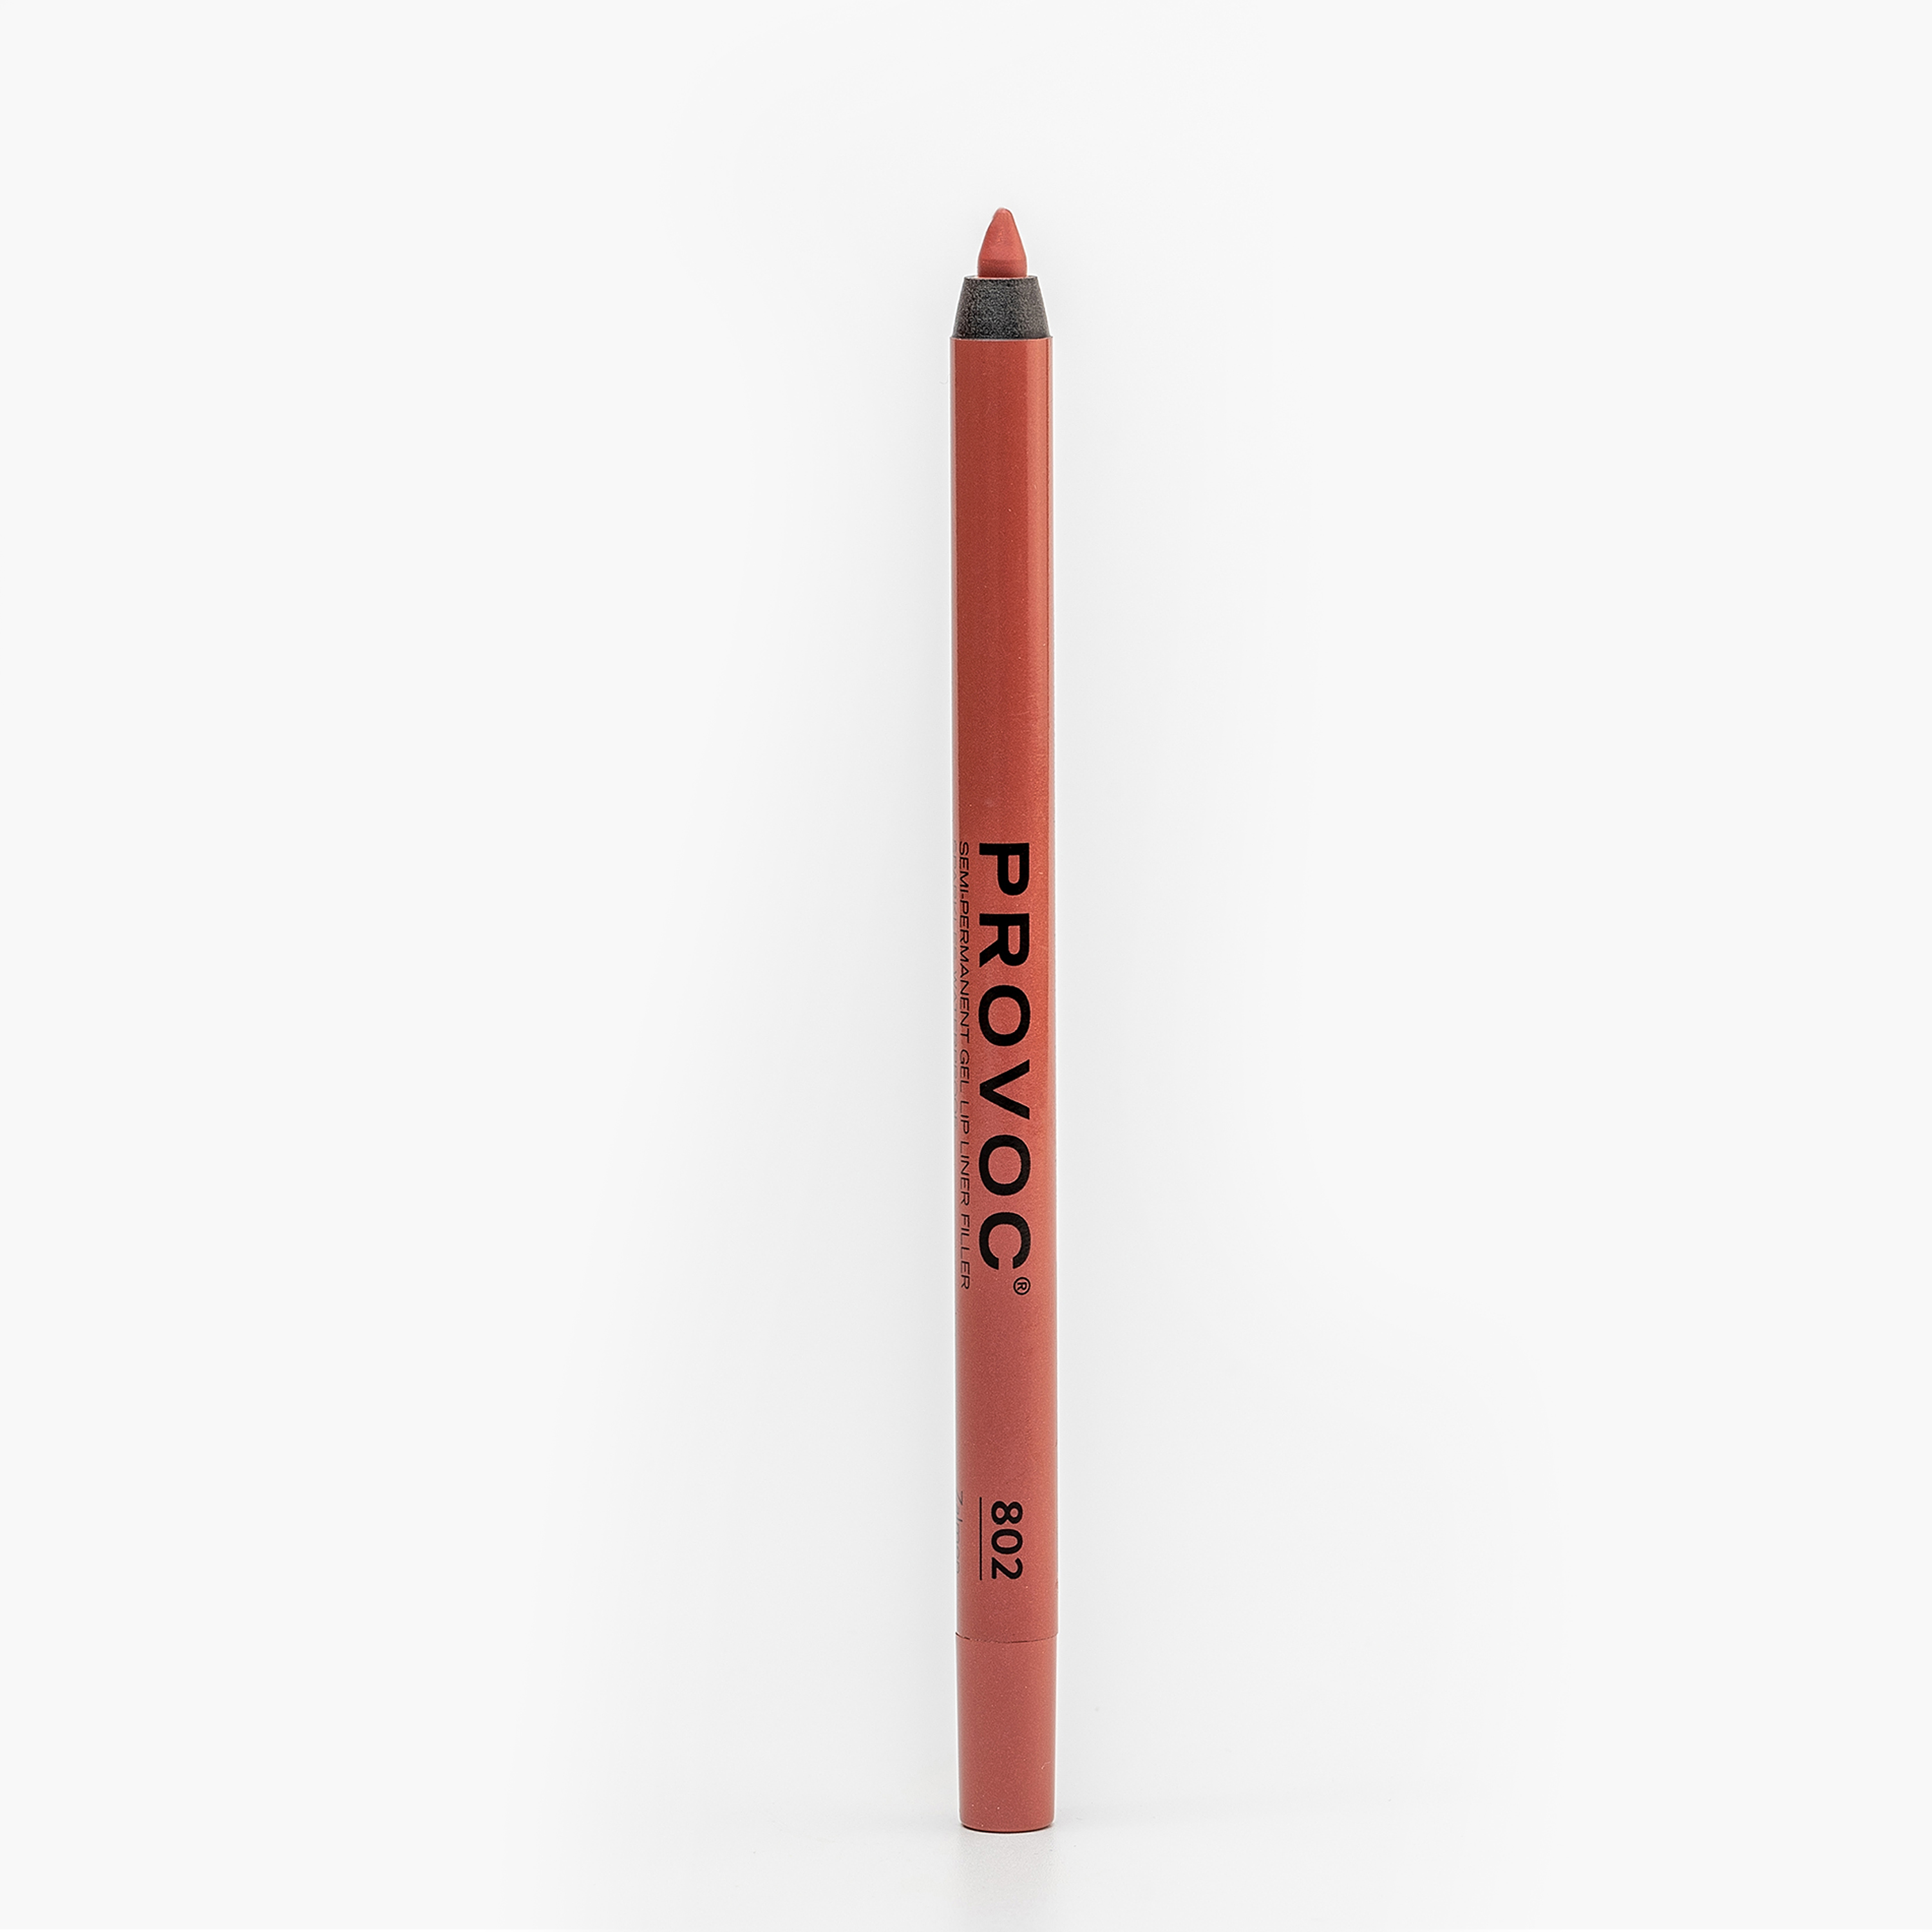 Карандаш для губ PROVOC Gel Lip Liner гелевый, №802 Zalmon персиковый нюд, 1,2 г карандаш для губ provoc gel lip liner hide